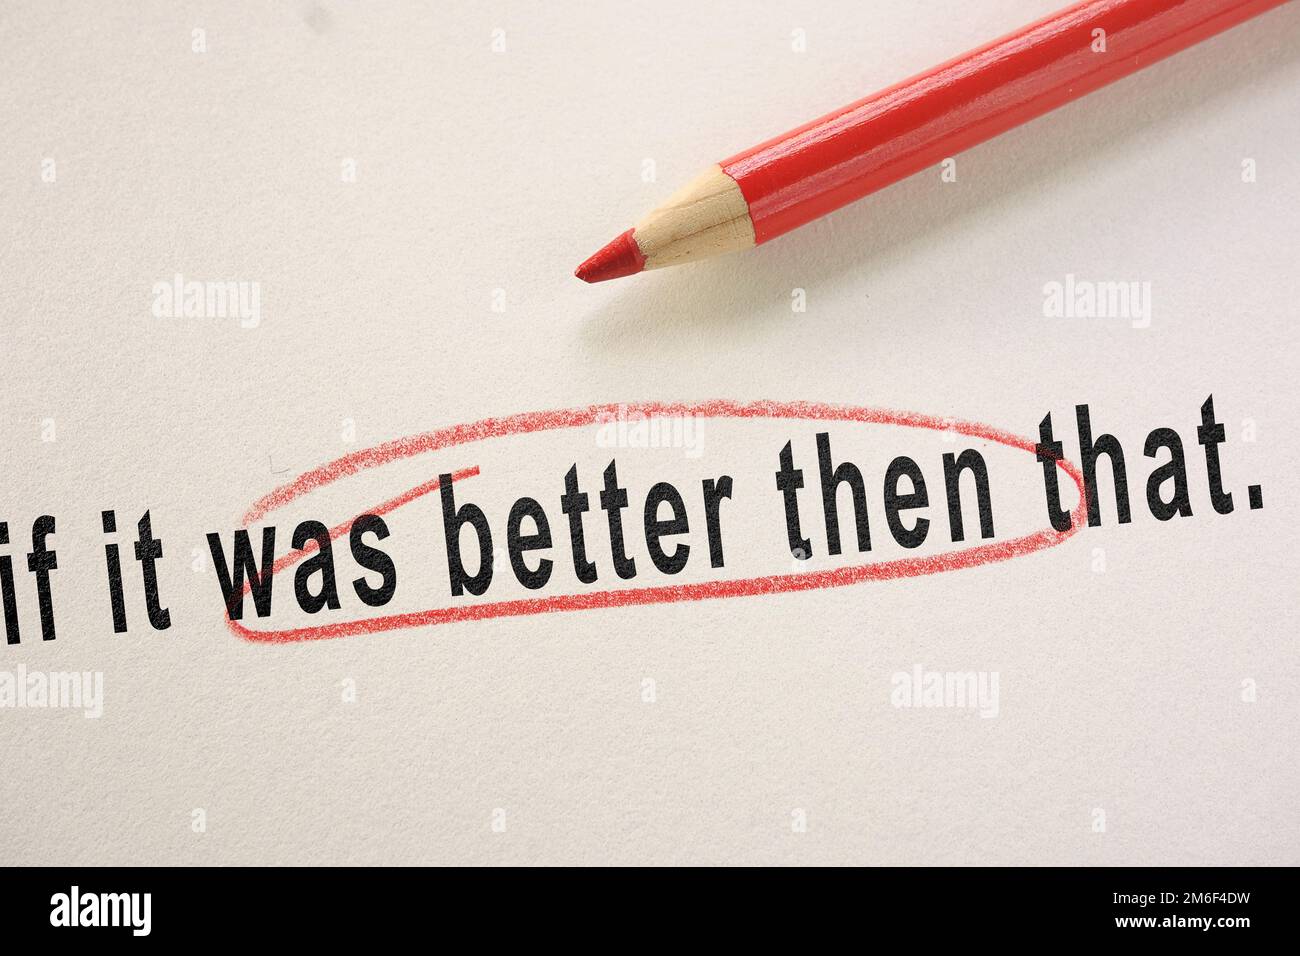 Errore grammaticale o ortografico cerchiato in matita rossa come correzione dell'editor Foto Stock